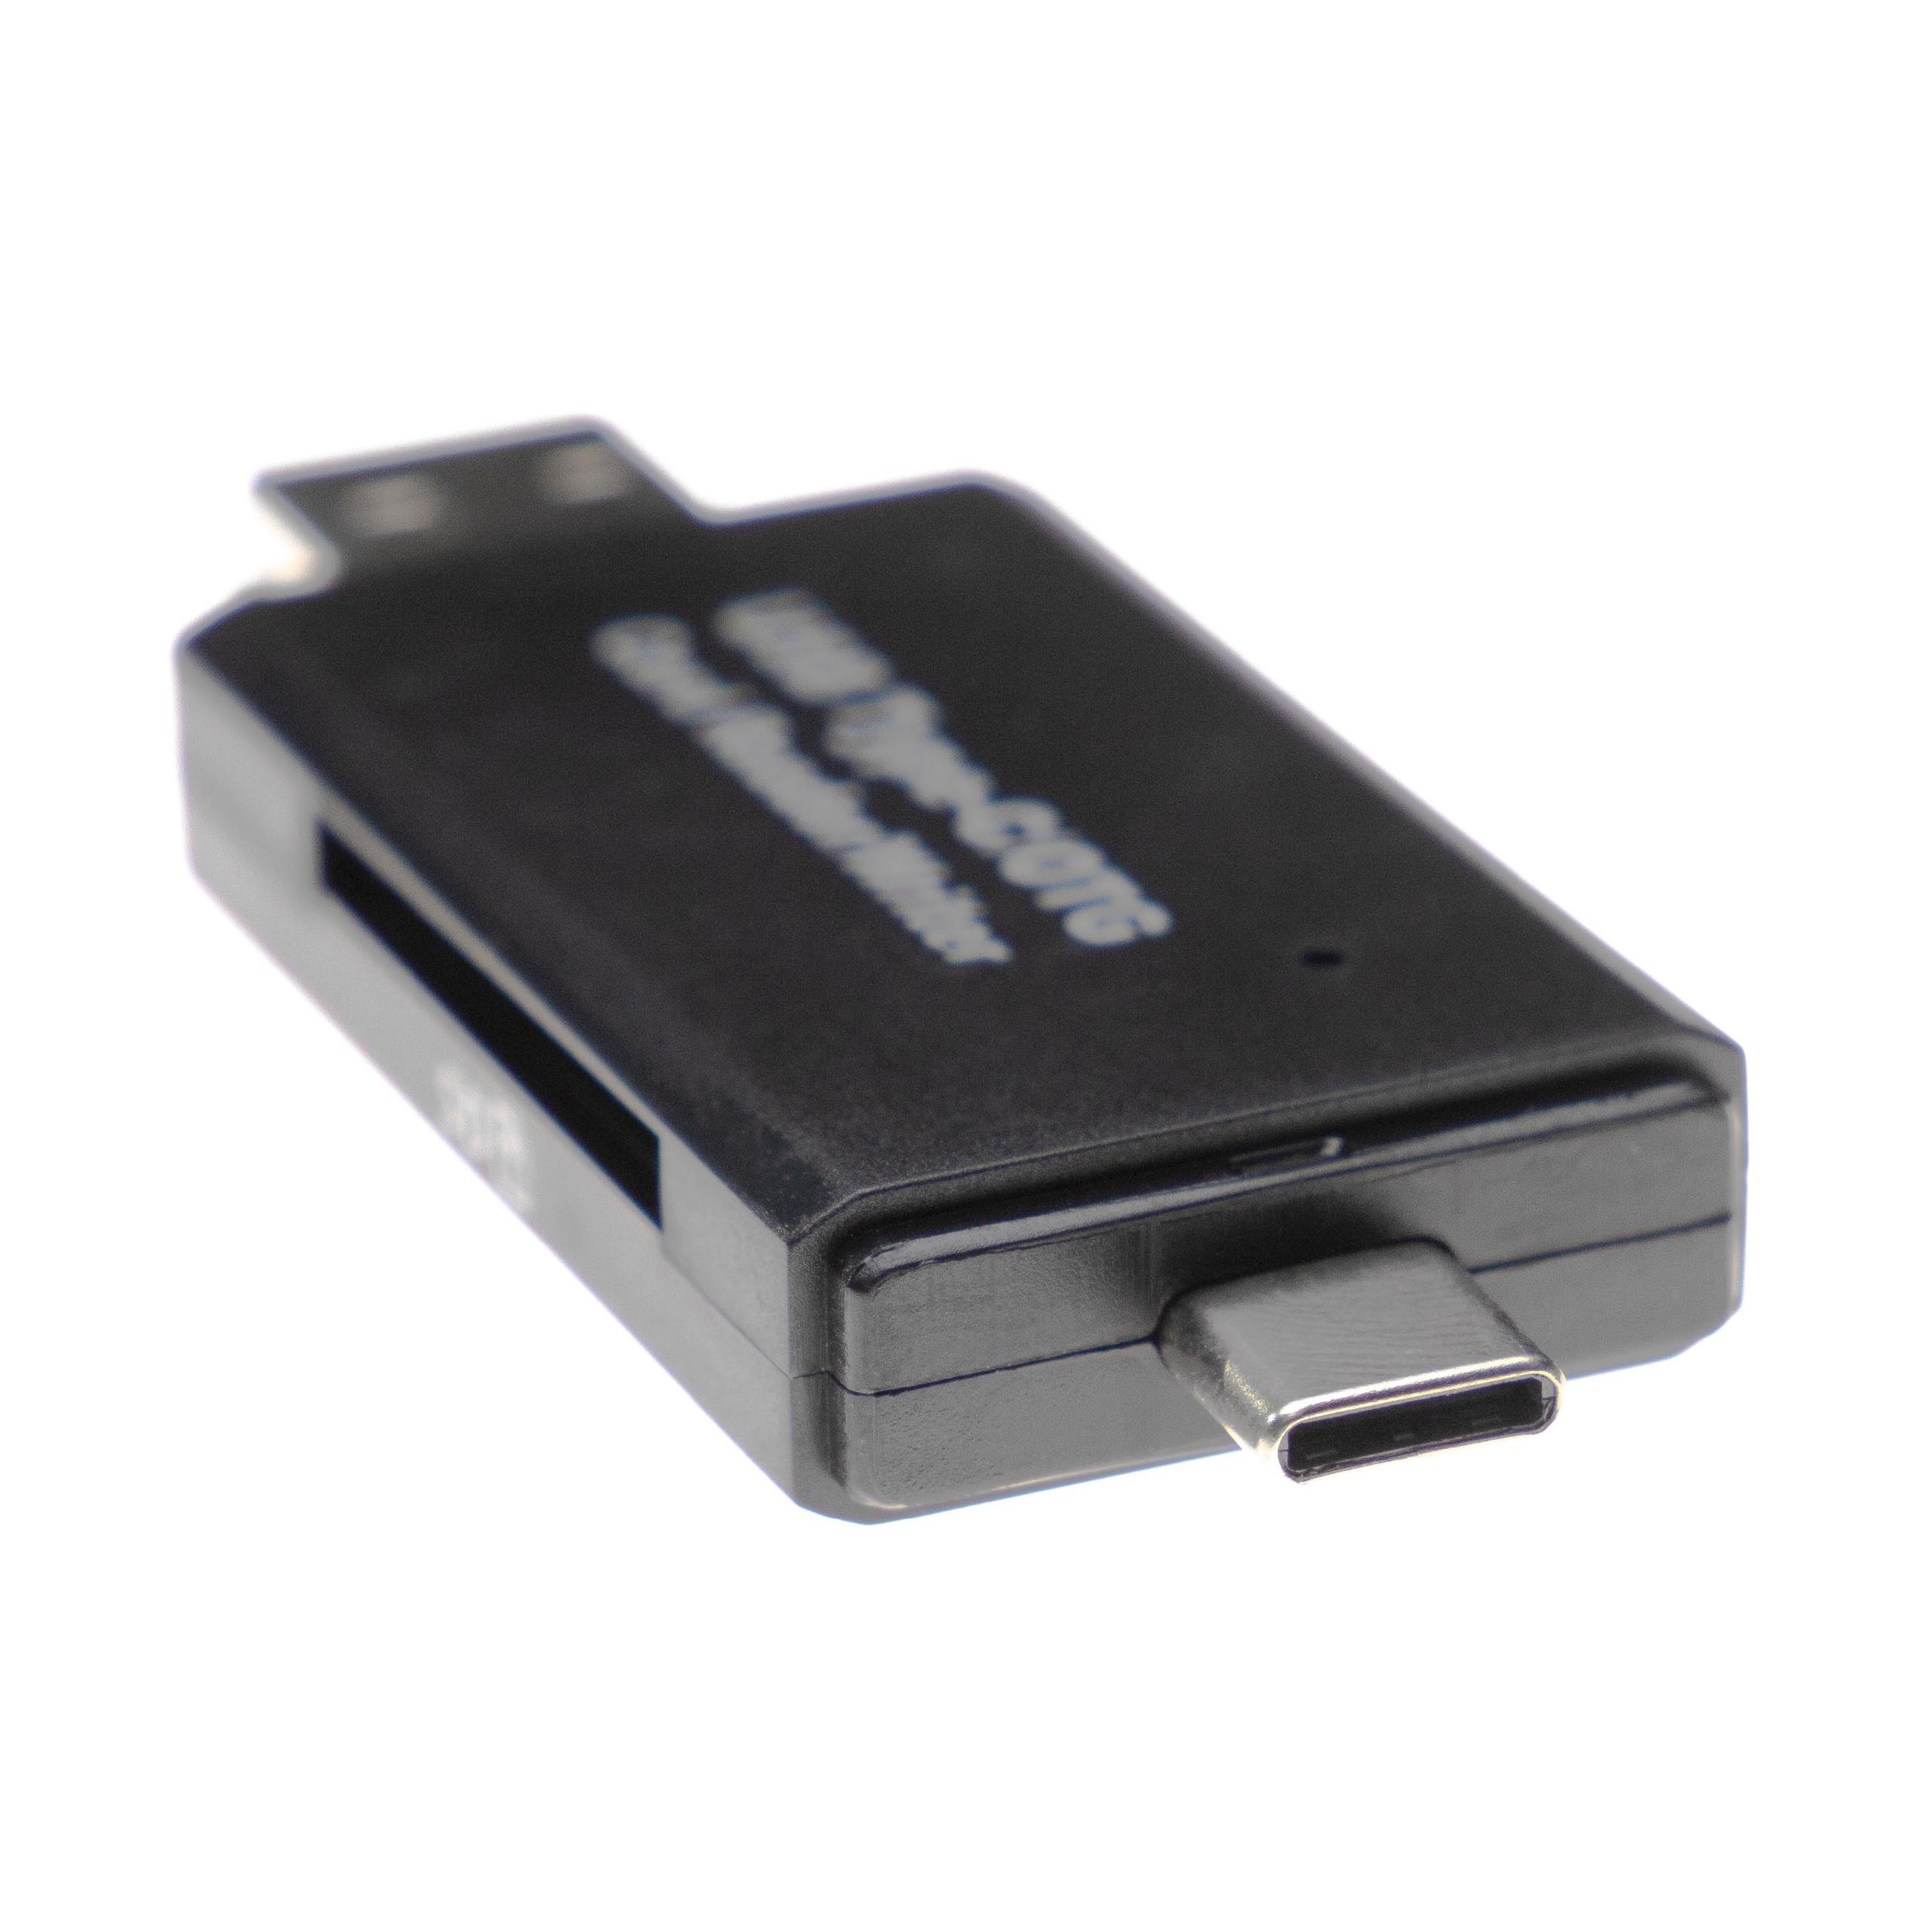 SD Kartenleser passend für Micro-SD, Mini-SD Speicherkarten - Mit Schutzkappe